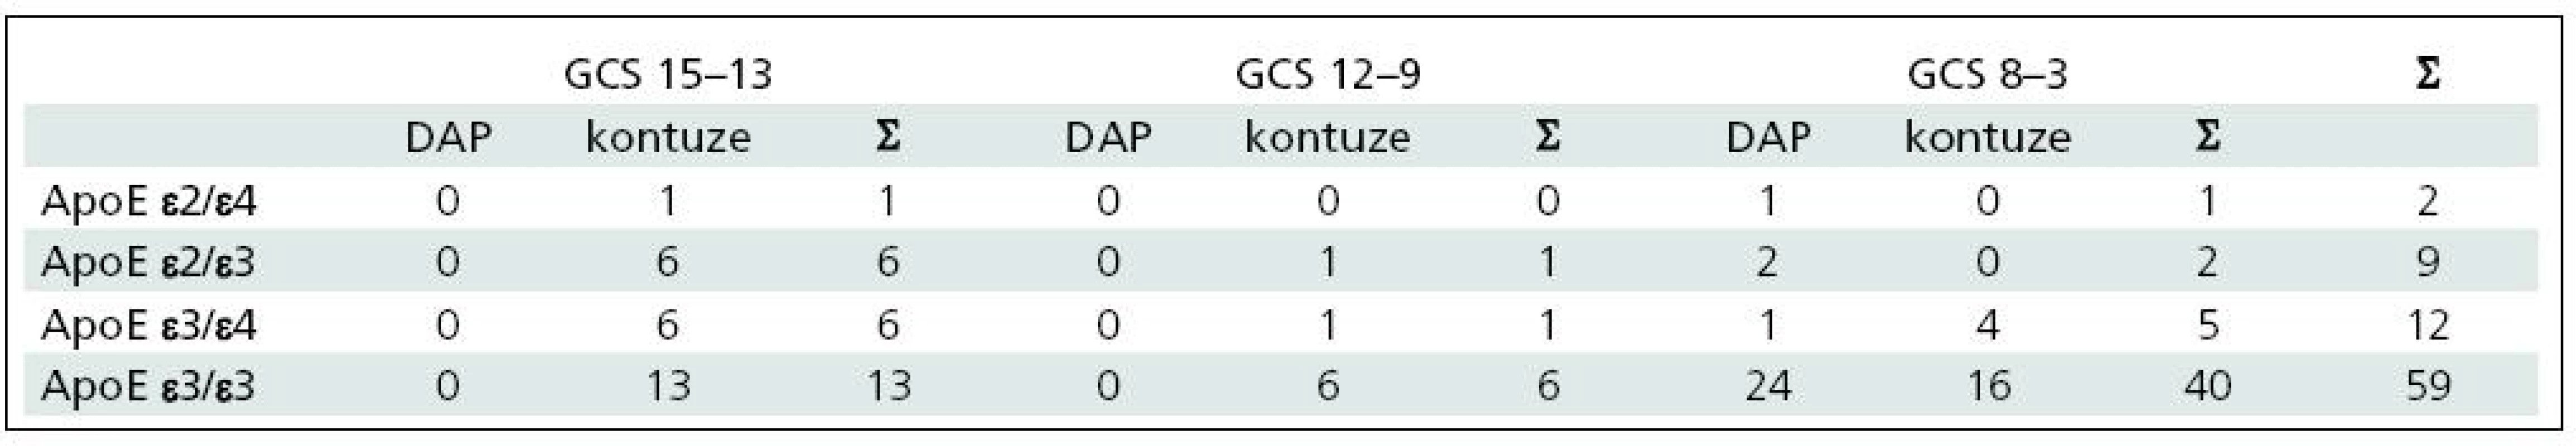 Typ a tíže poranění dle GCS ve skupinách pacientů dle genotypů ApoE.